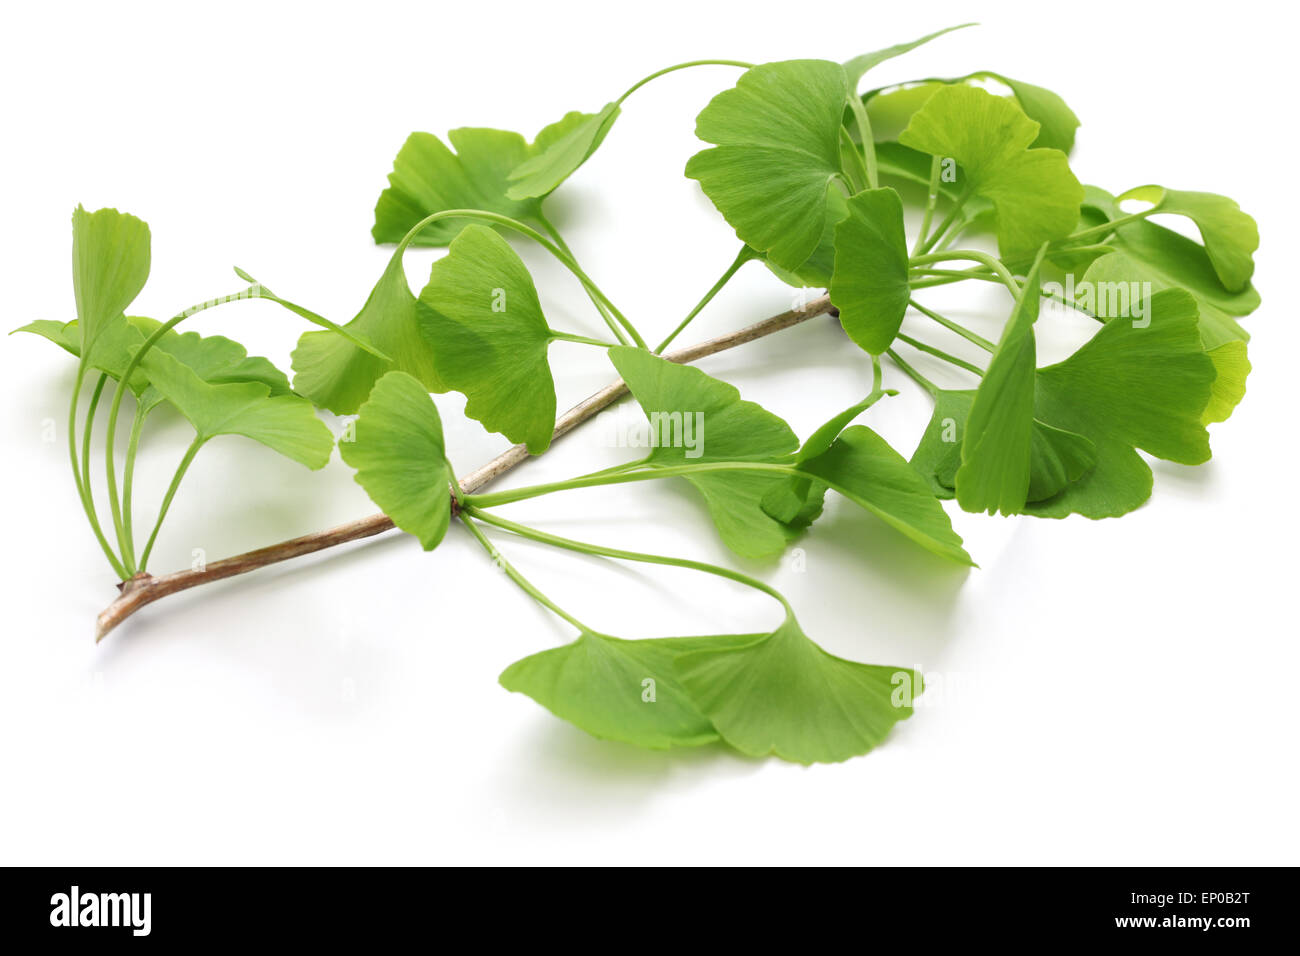 ginkgo biloba leaves isolated on white background Stock Photo